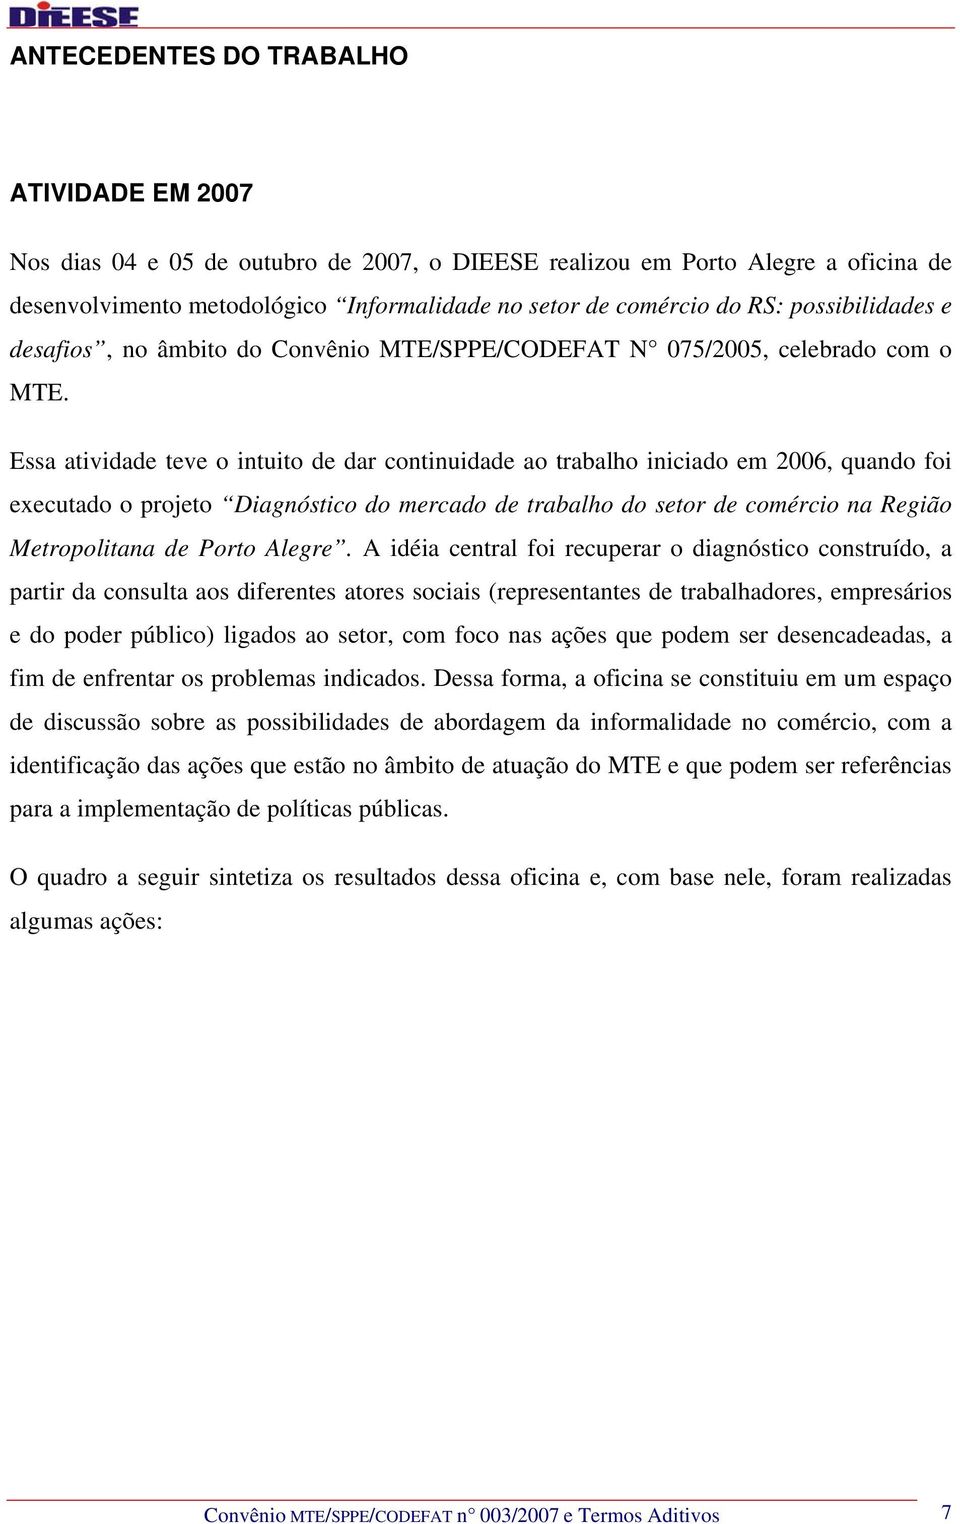 Essa atividade teve o intuito de dar continuidade ao trabalho iniciado em 2006, quando foi executado o projeto Diagnóstico do mercado de trabalho do setor de comércio na Região Metropolitana de Porto